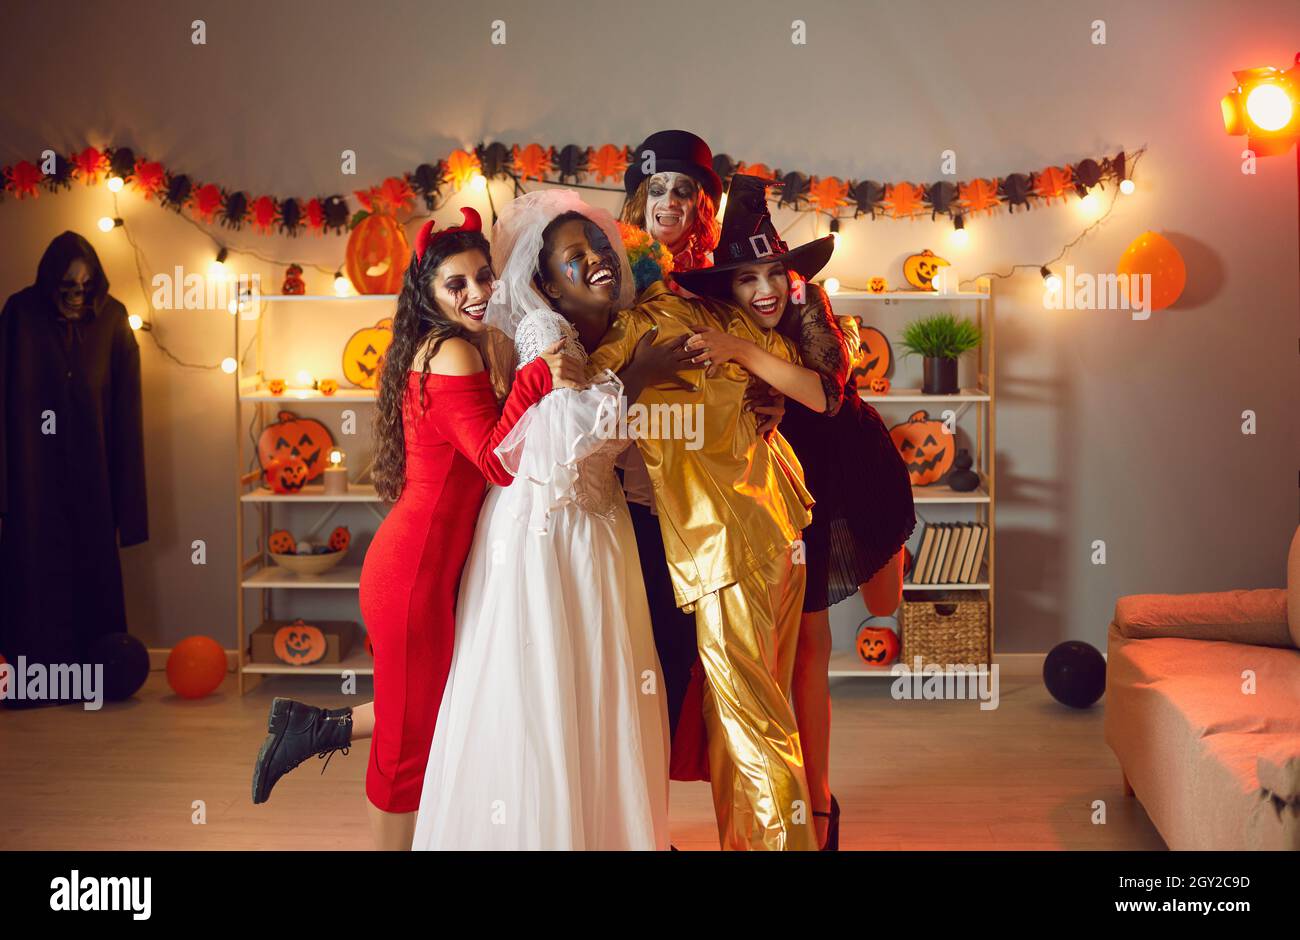 Groupe de jeunes heureux dans des costumes effrayants s'embrassant les uns les autres à la fête d'Halloween Banque D'Images